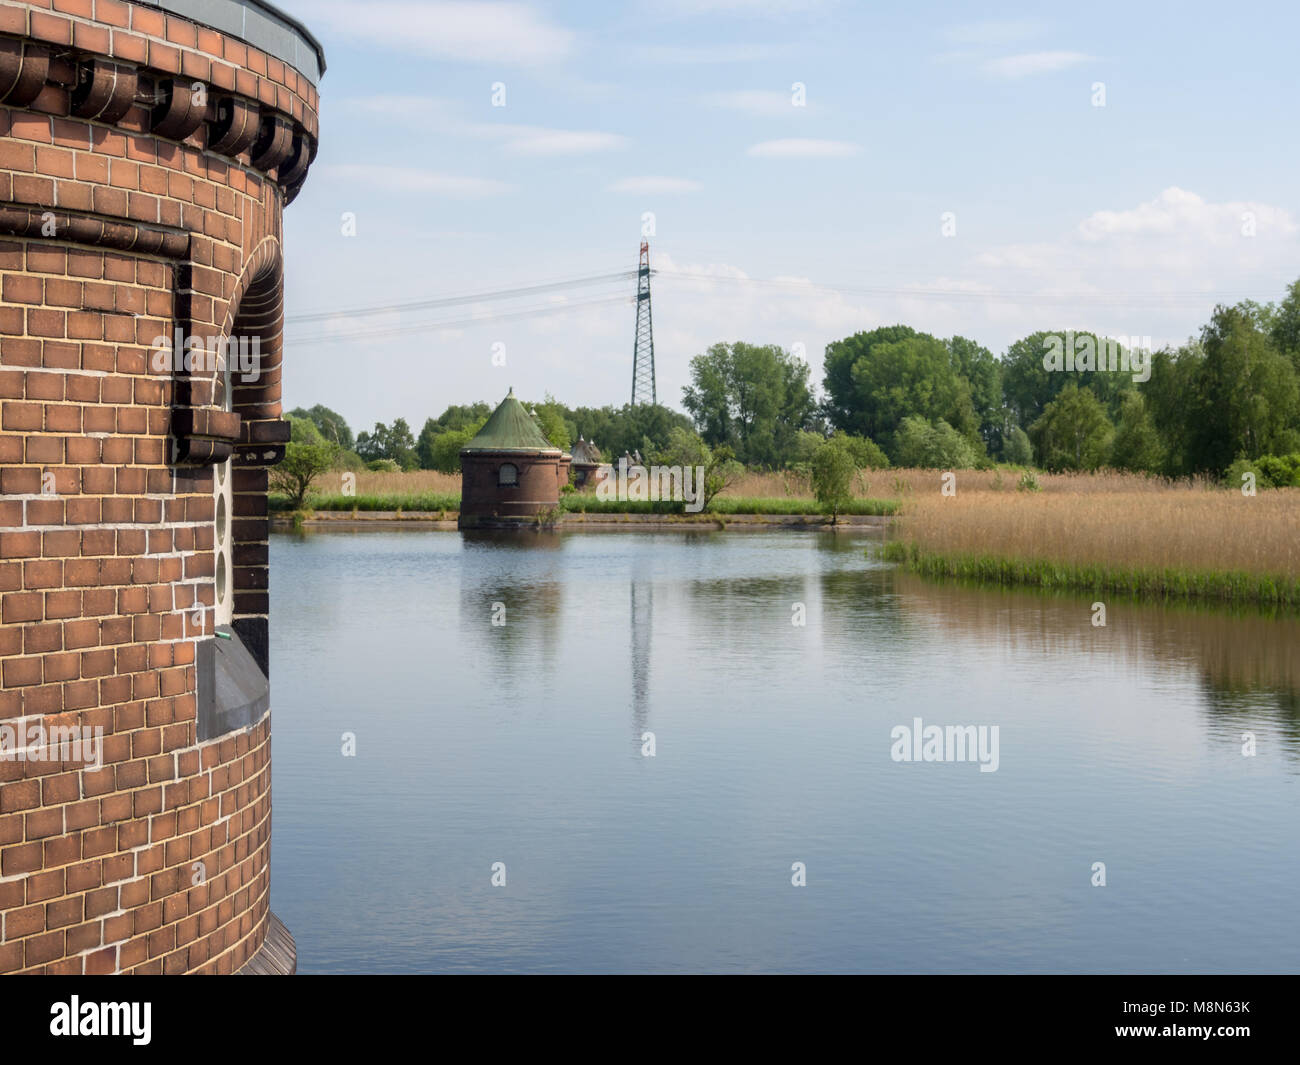 Hamburg, Deutschland - 19. Mai 2016: alte Steuerelement Kabinen am Teich bei Verbindung von Industrial Museum Wasserkunst Kaltehofe, einer ehemaligen Kläranlage. Stockfoto